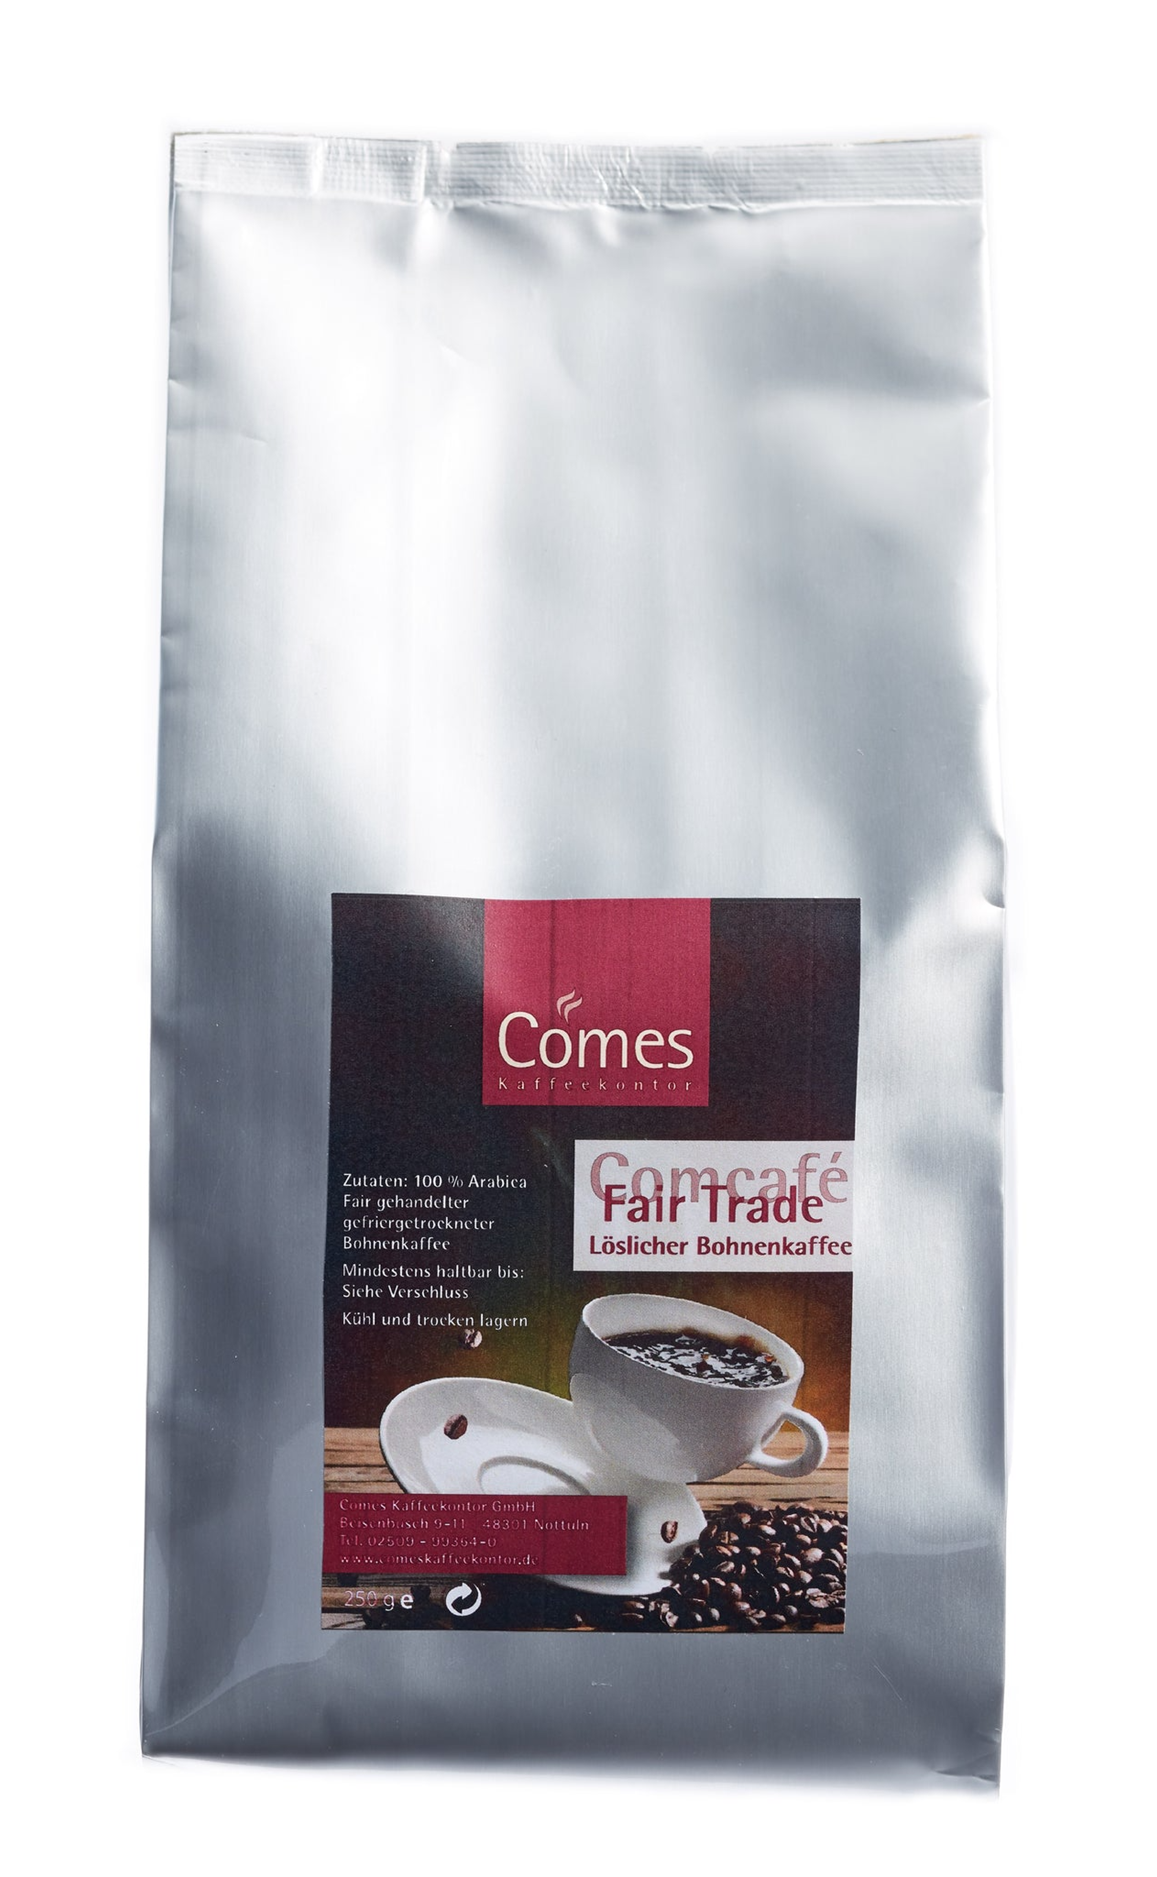 Comcafé BIO FAIRTRADE löslicher Bohnenkaffee 250g Beutel